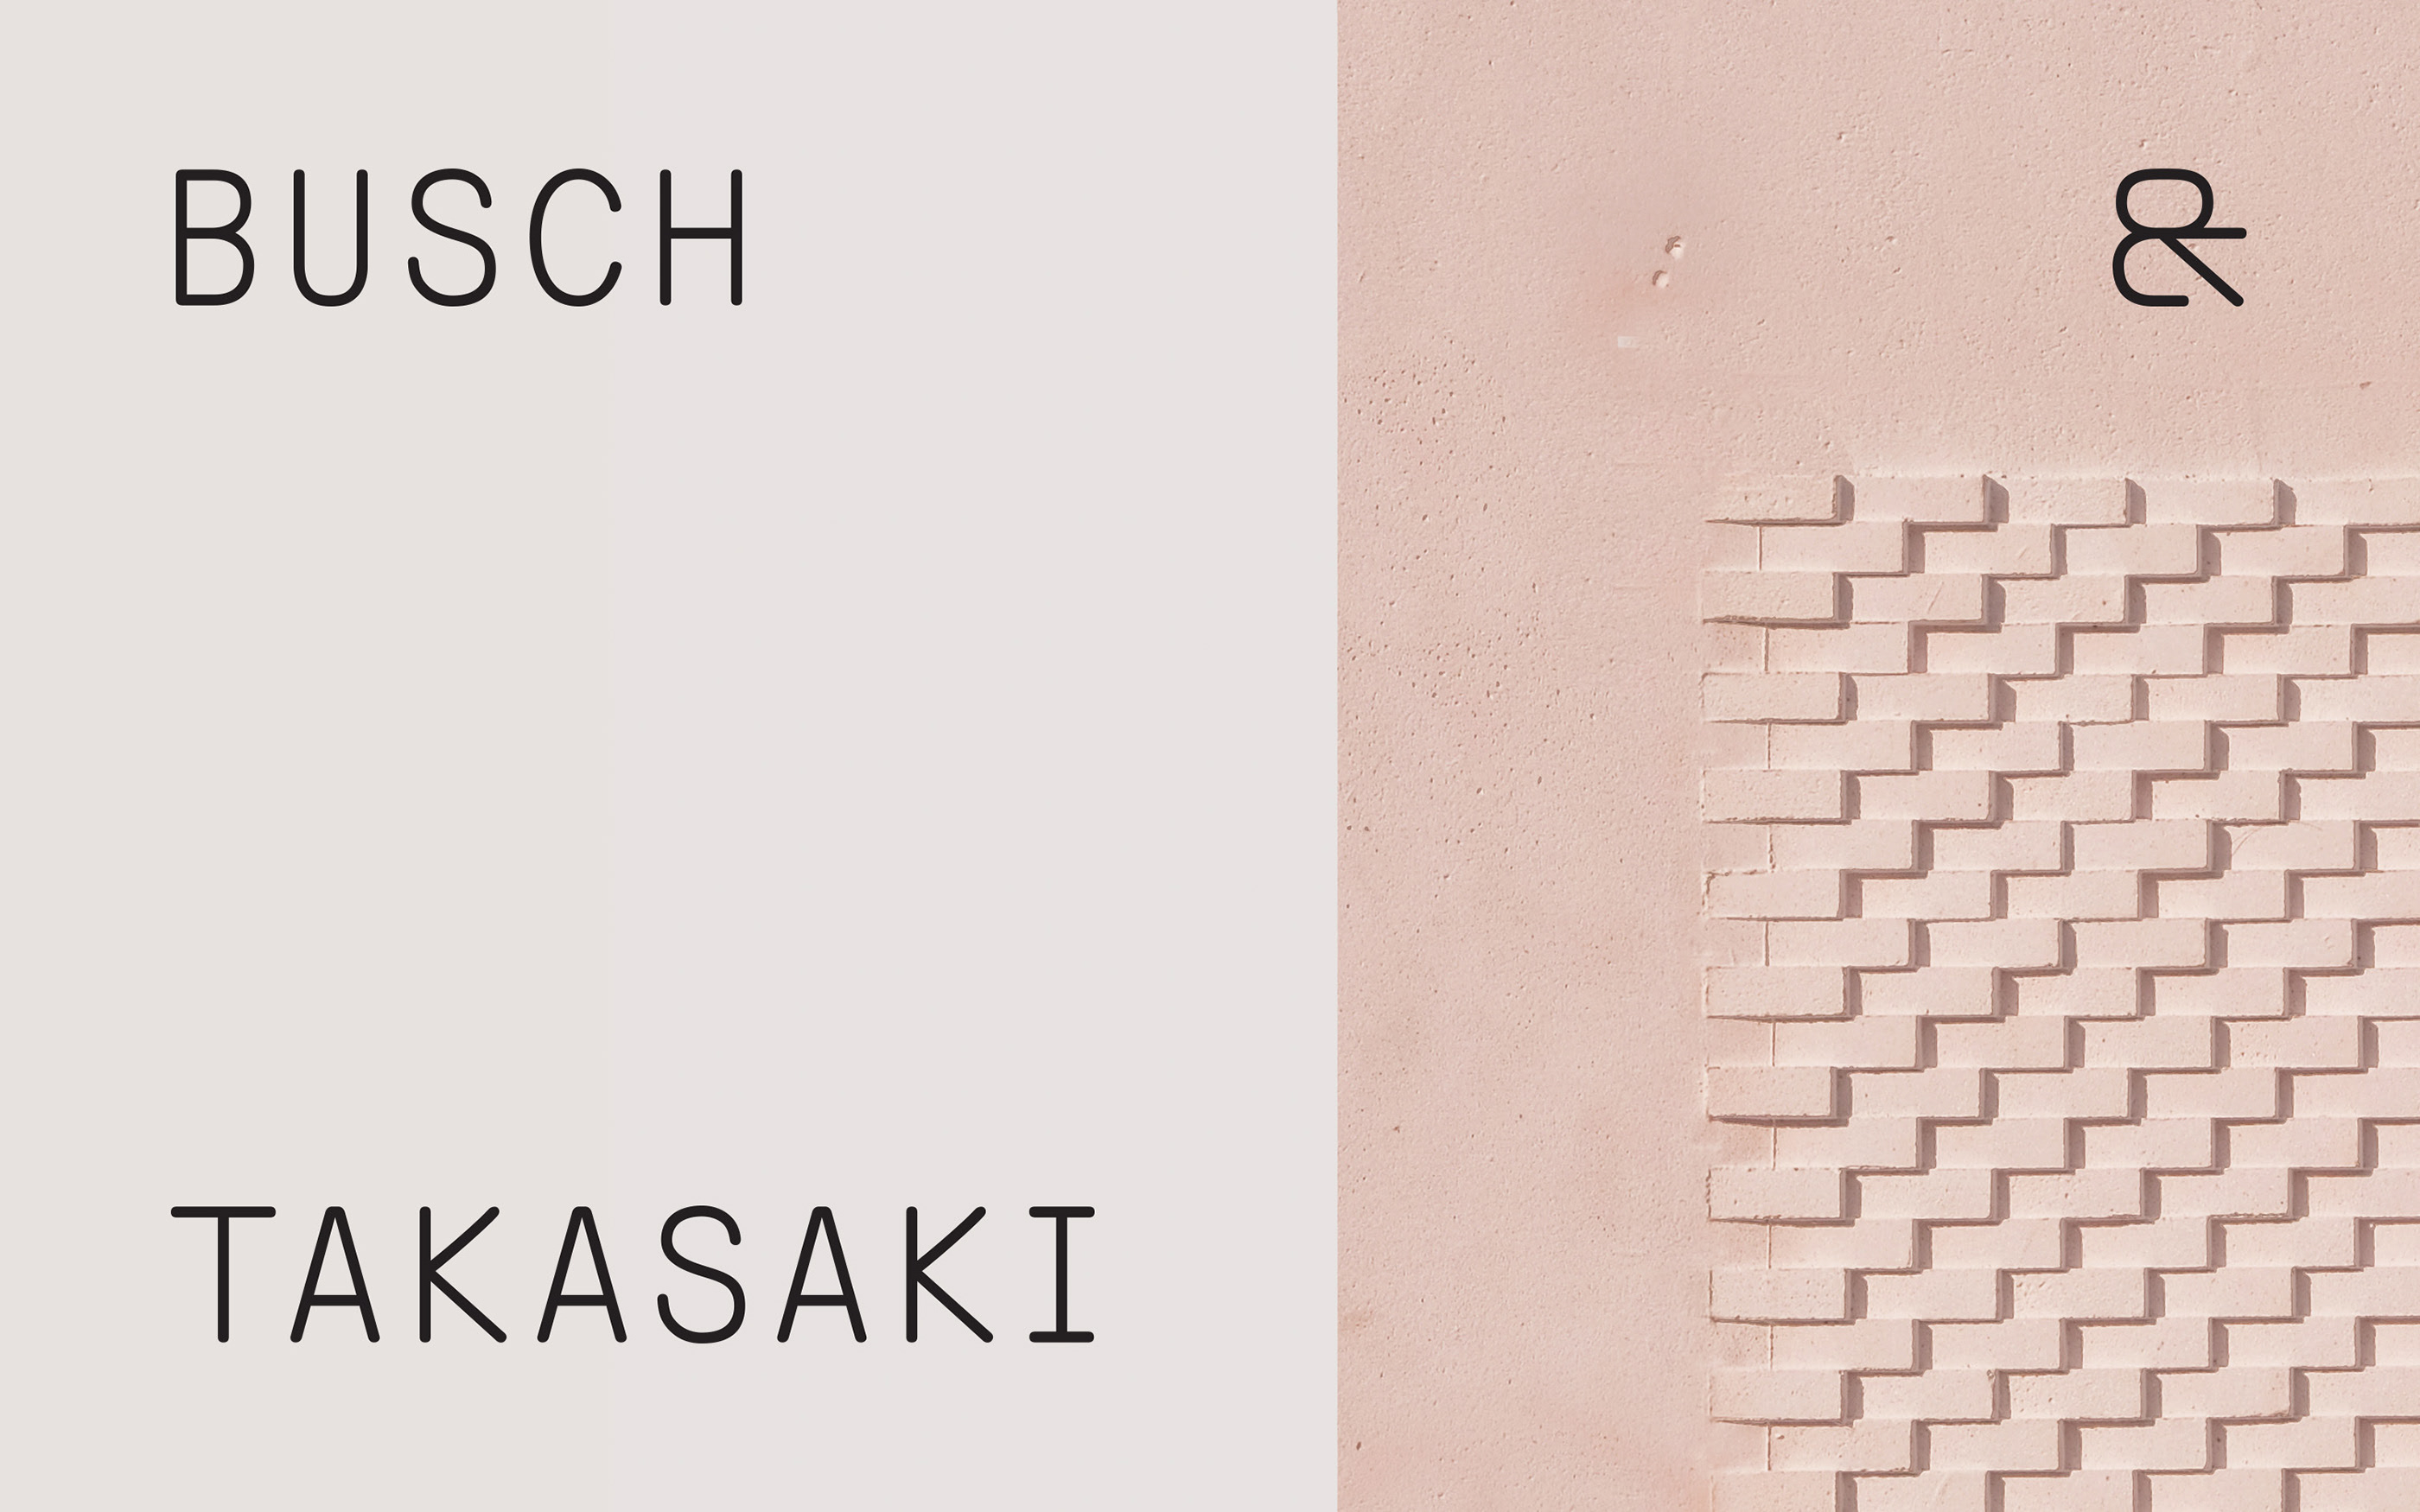 柏林Busch & Takasaki Architects建筑事务所视觉识别设计